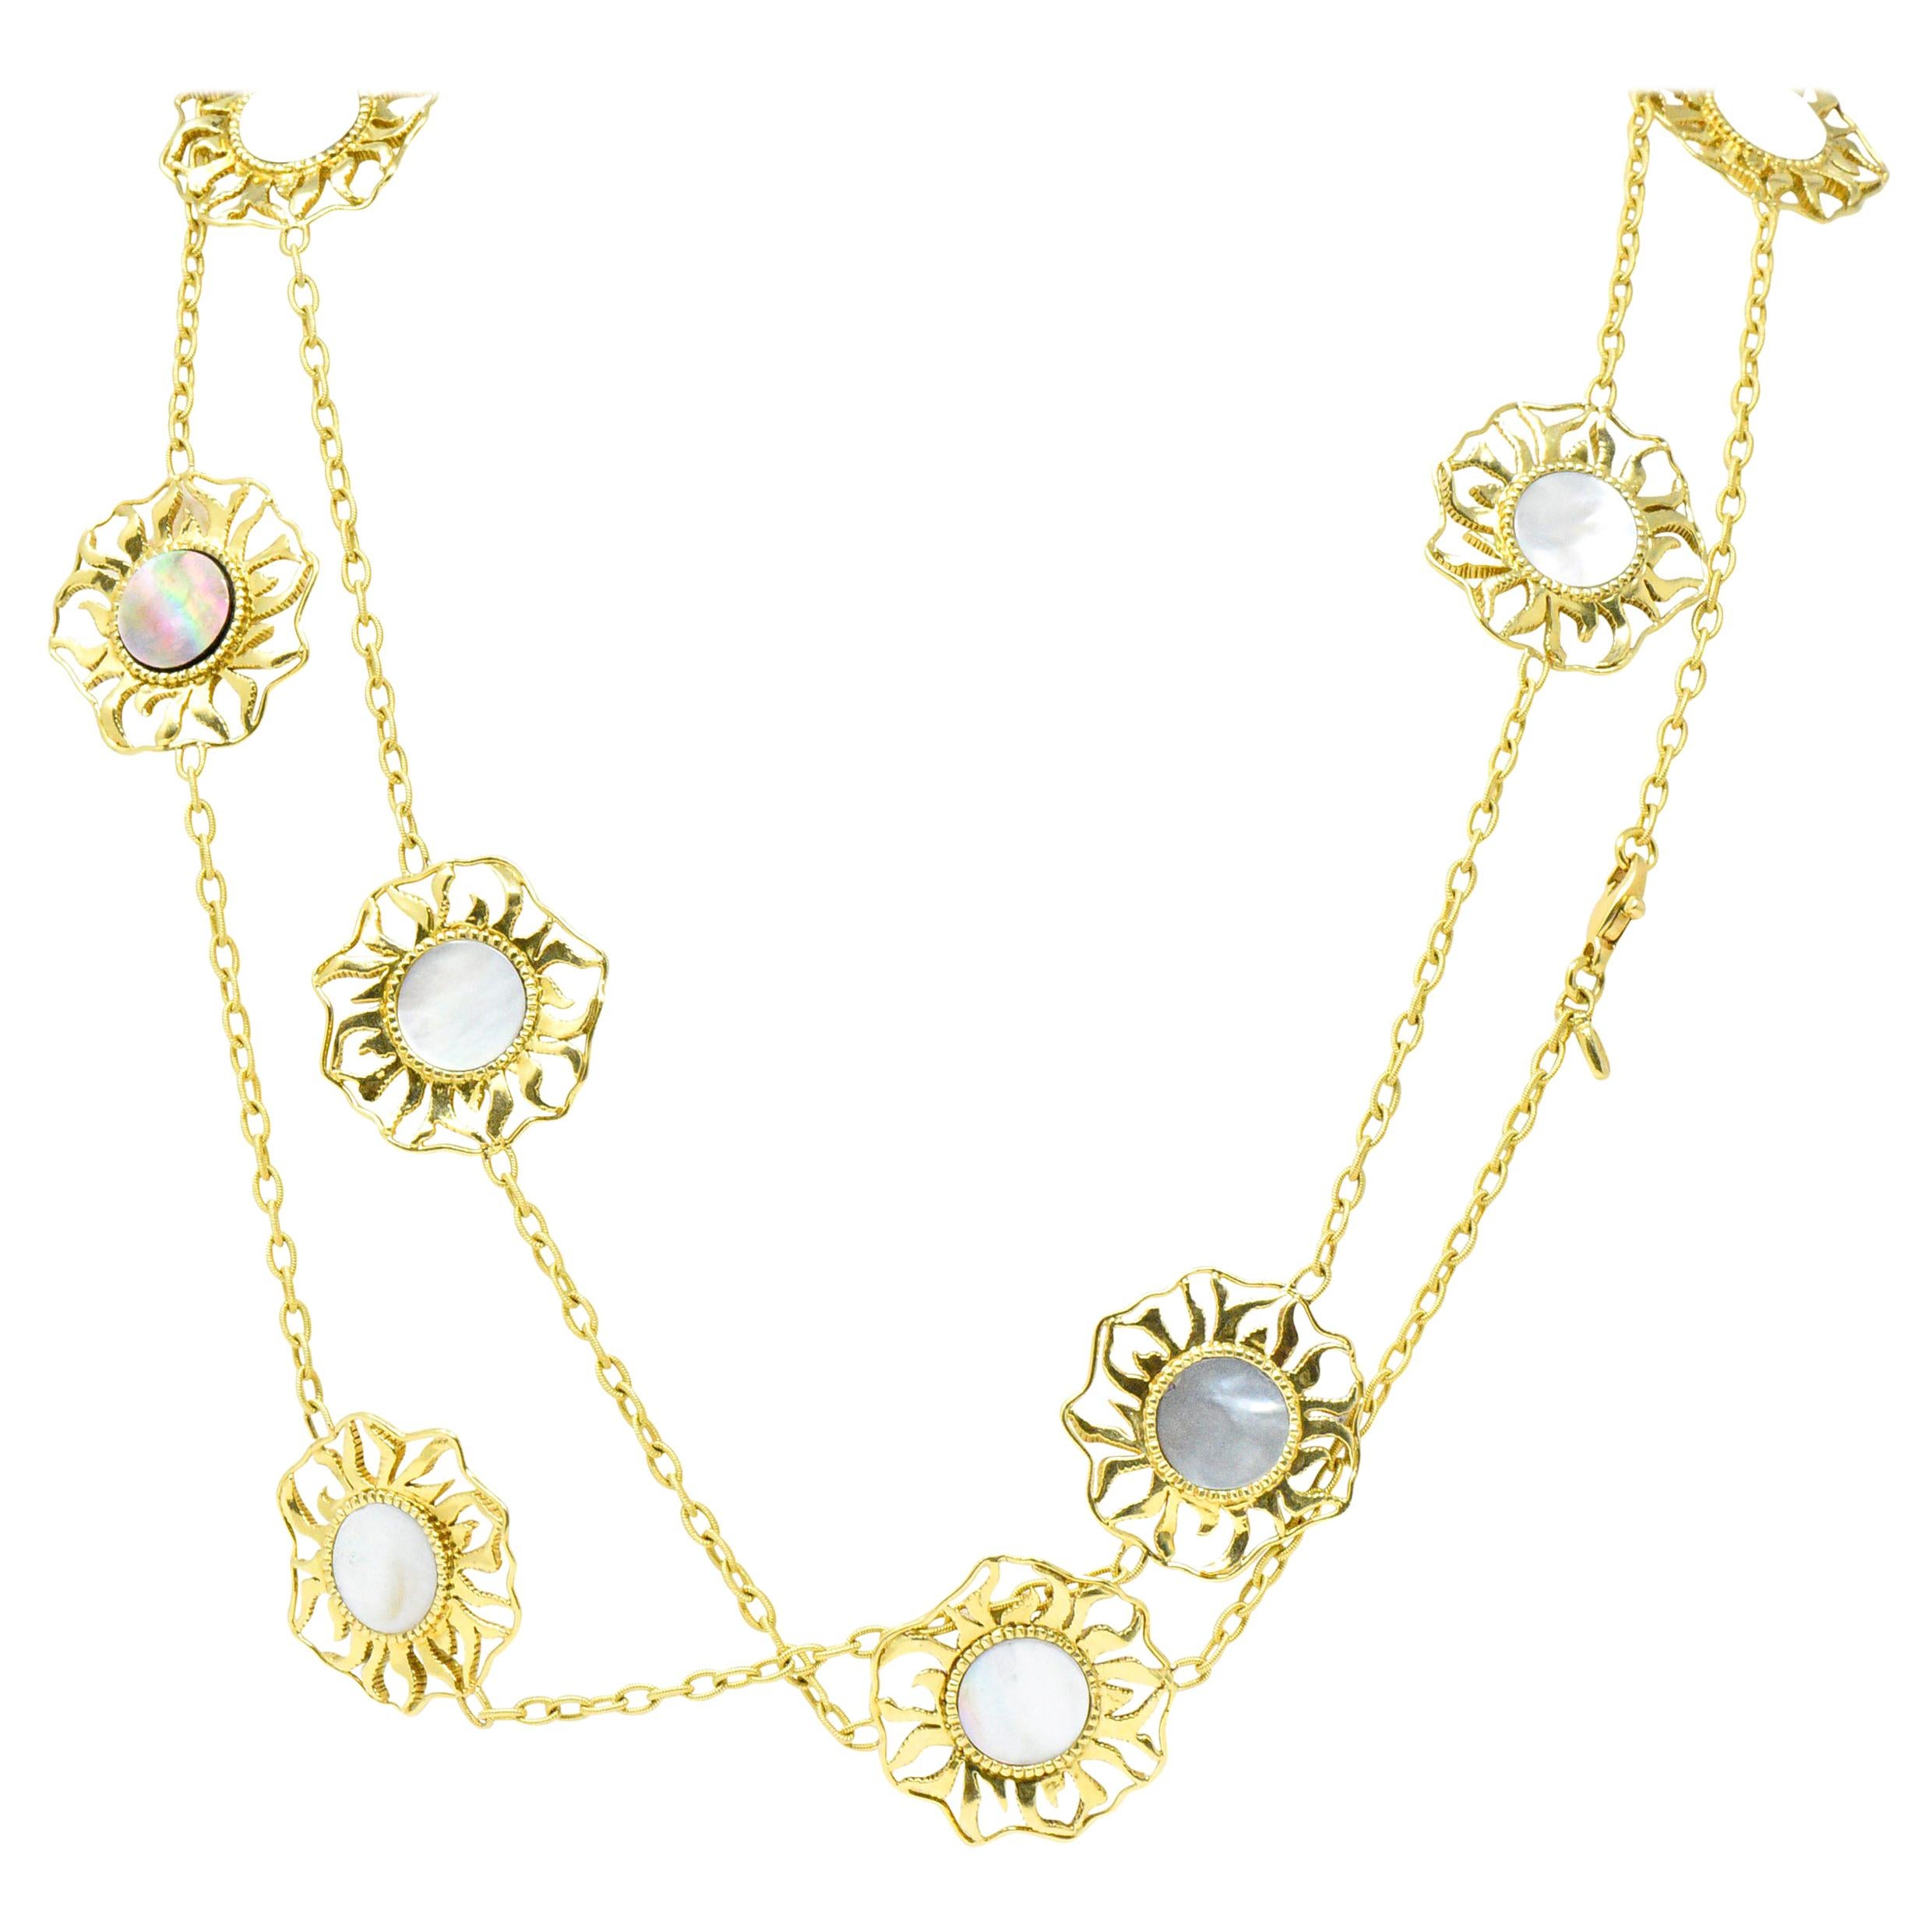 Doris Panos Abalone 18 Karat Gold Necklace